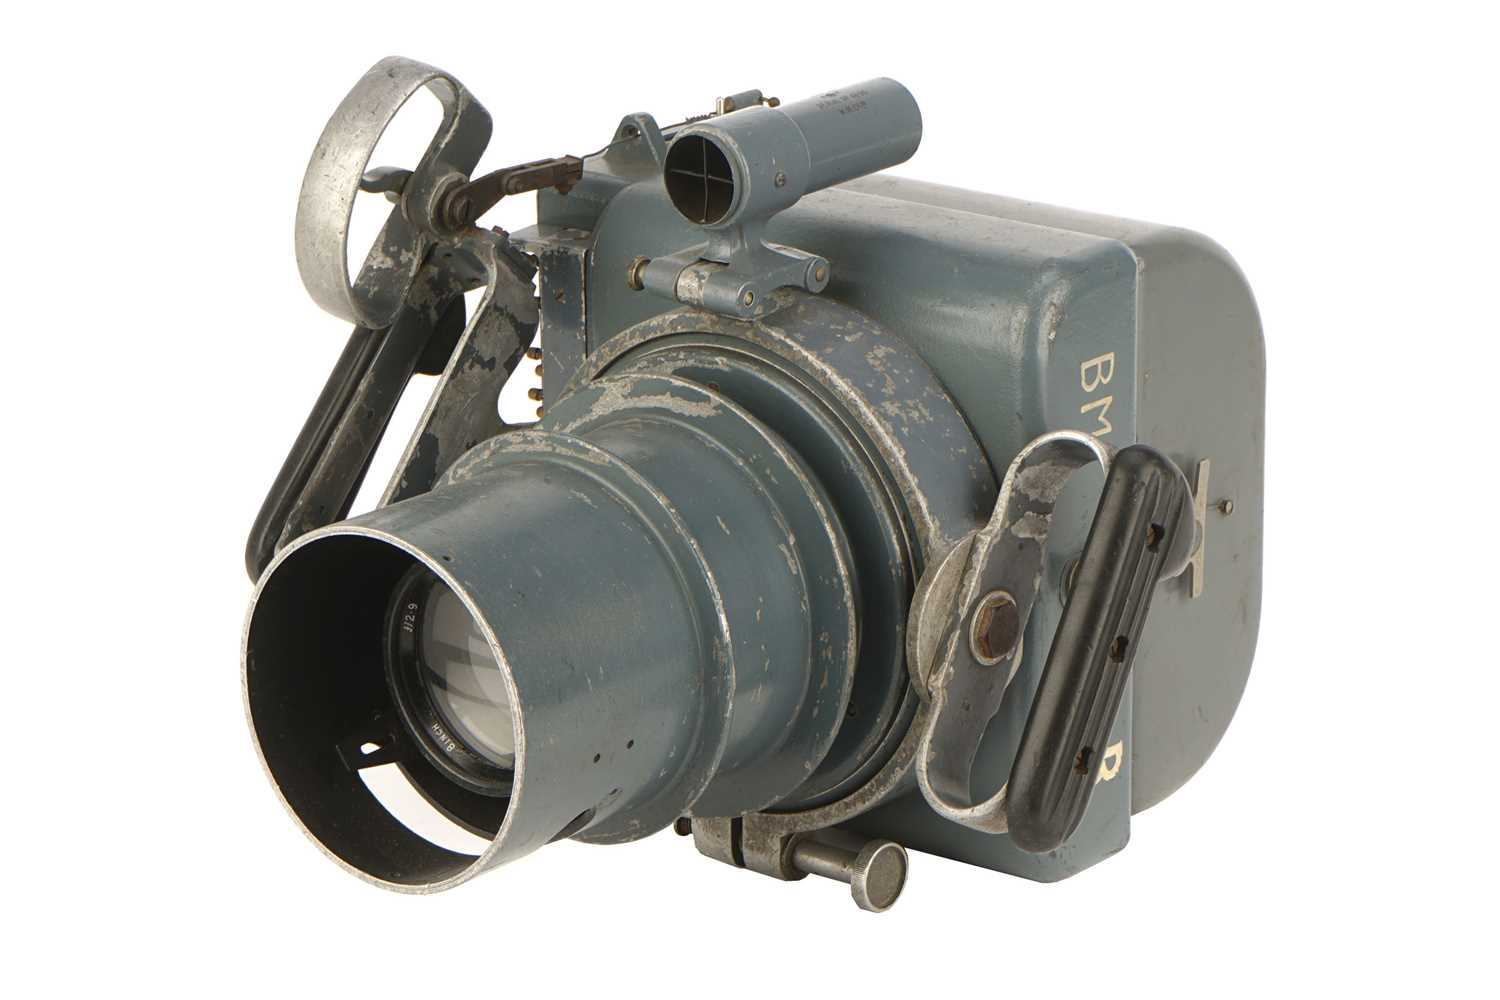 Lot 258 - A Williamson F.24 General Purpose Handheld Camera